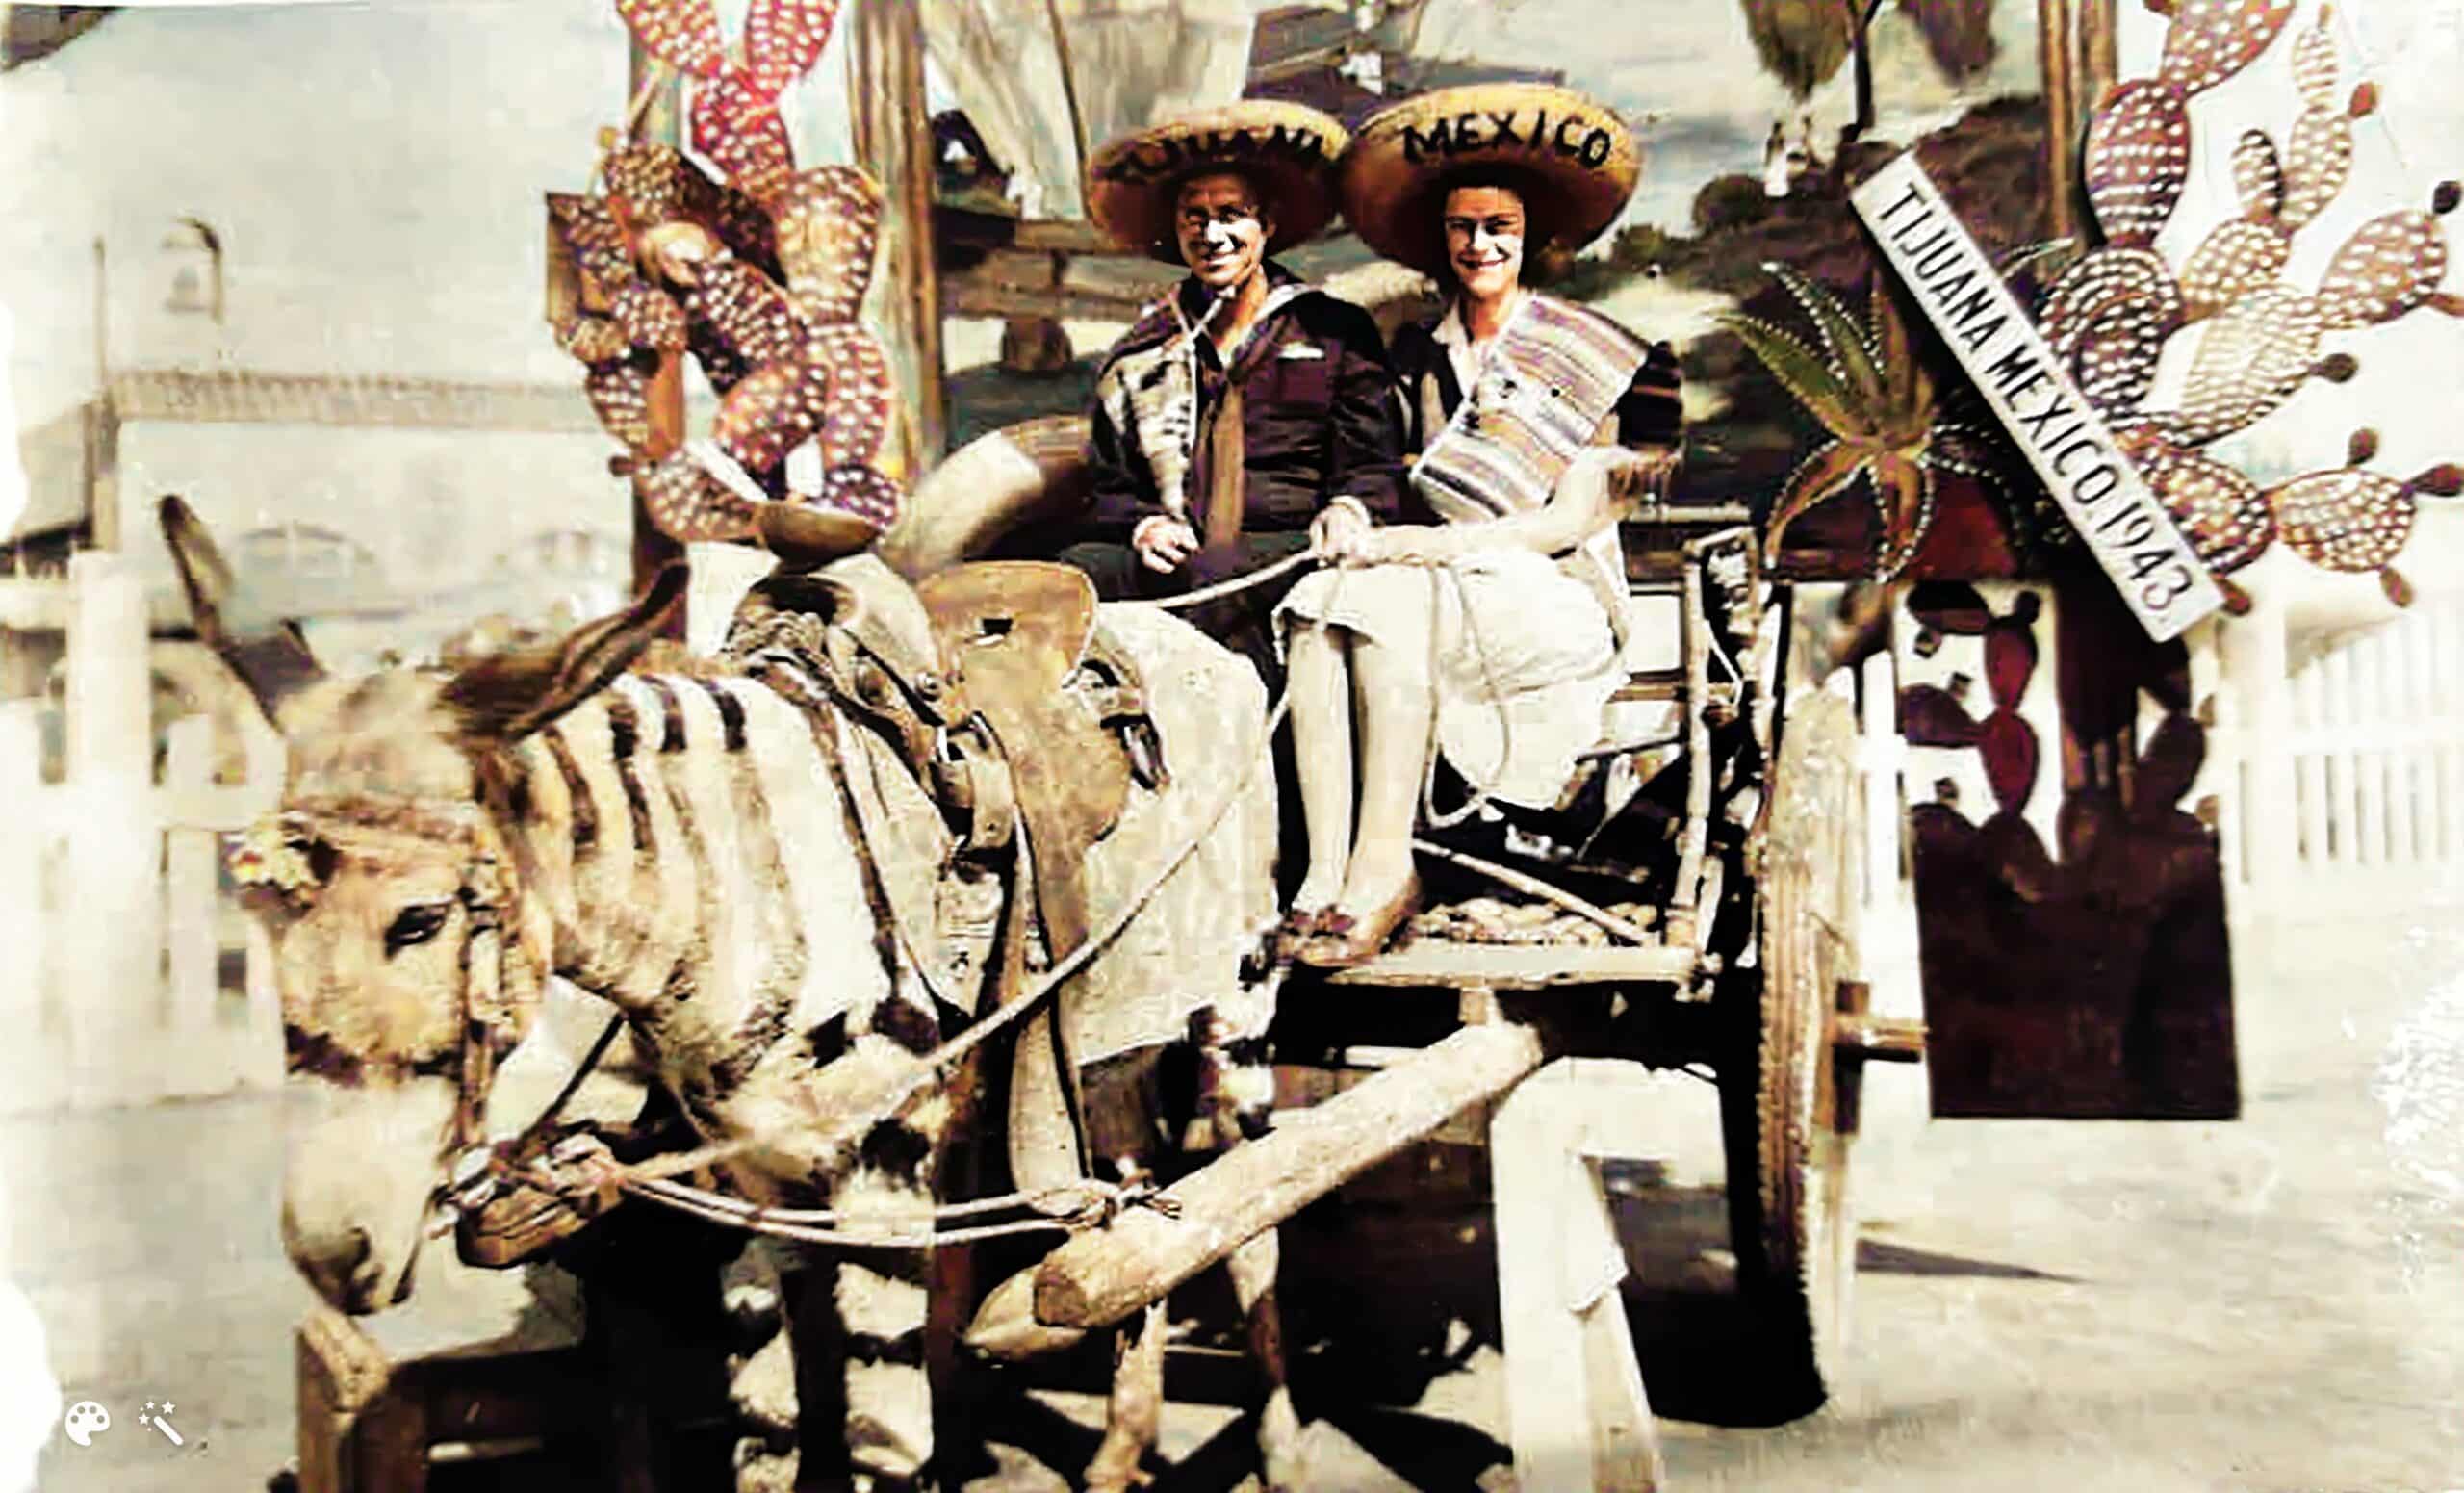 Claude i Marie podczas miesiąca miodowego w Meksyku, 1943. Zdjęcie pokolorowane i ulepszone przez MyHeritage